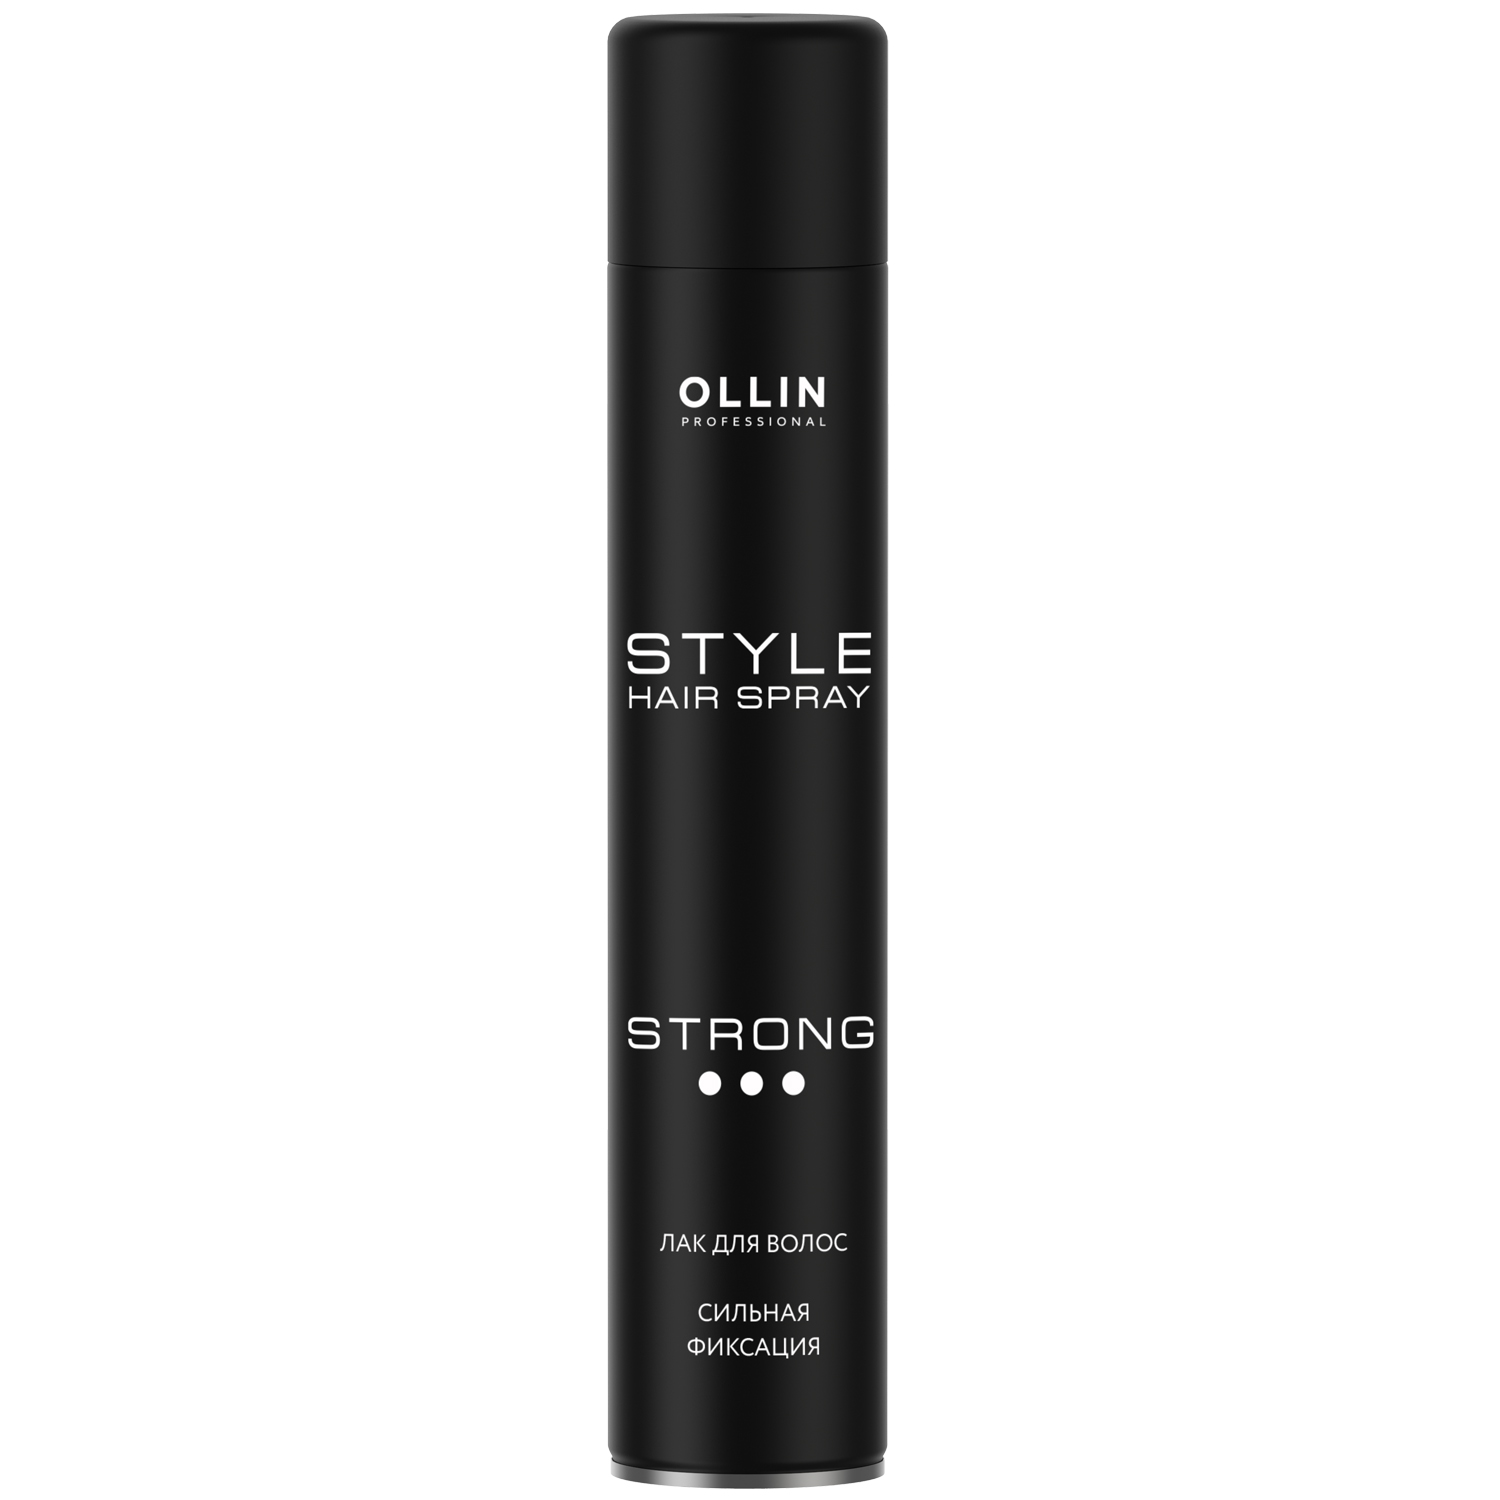 Ollin Professional Лак для волос сильной фиксации, 500 мл (Ollin Professional, Style) мусс style сильной фиксации ollin professional 250 мл